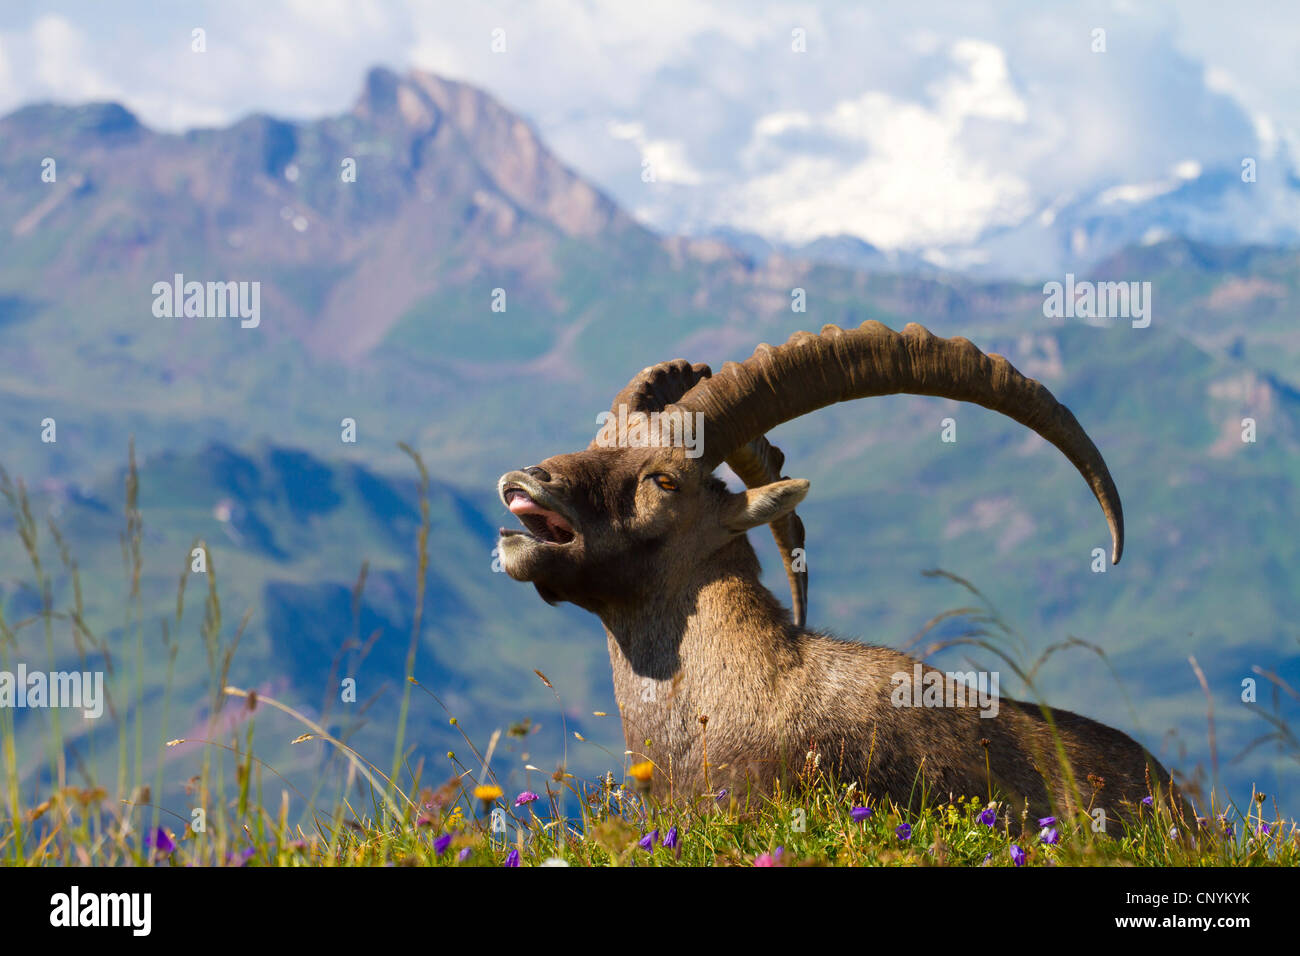 Bouquetin des Alpes (Capra ibex), buck sur une prairie en fleurs, bâillements, suisse Sankt Gallen, Chaeserrugg Banque D'Images